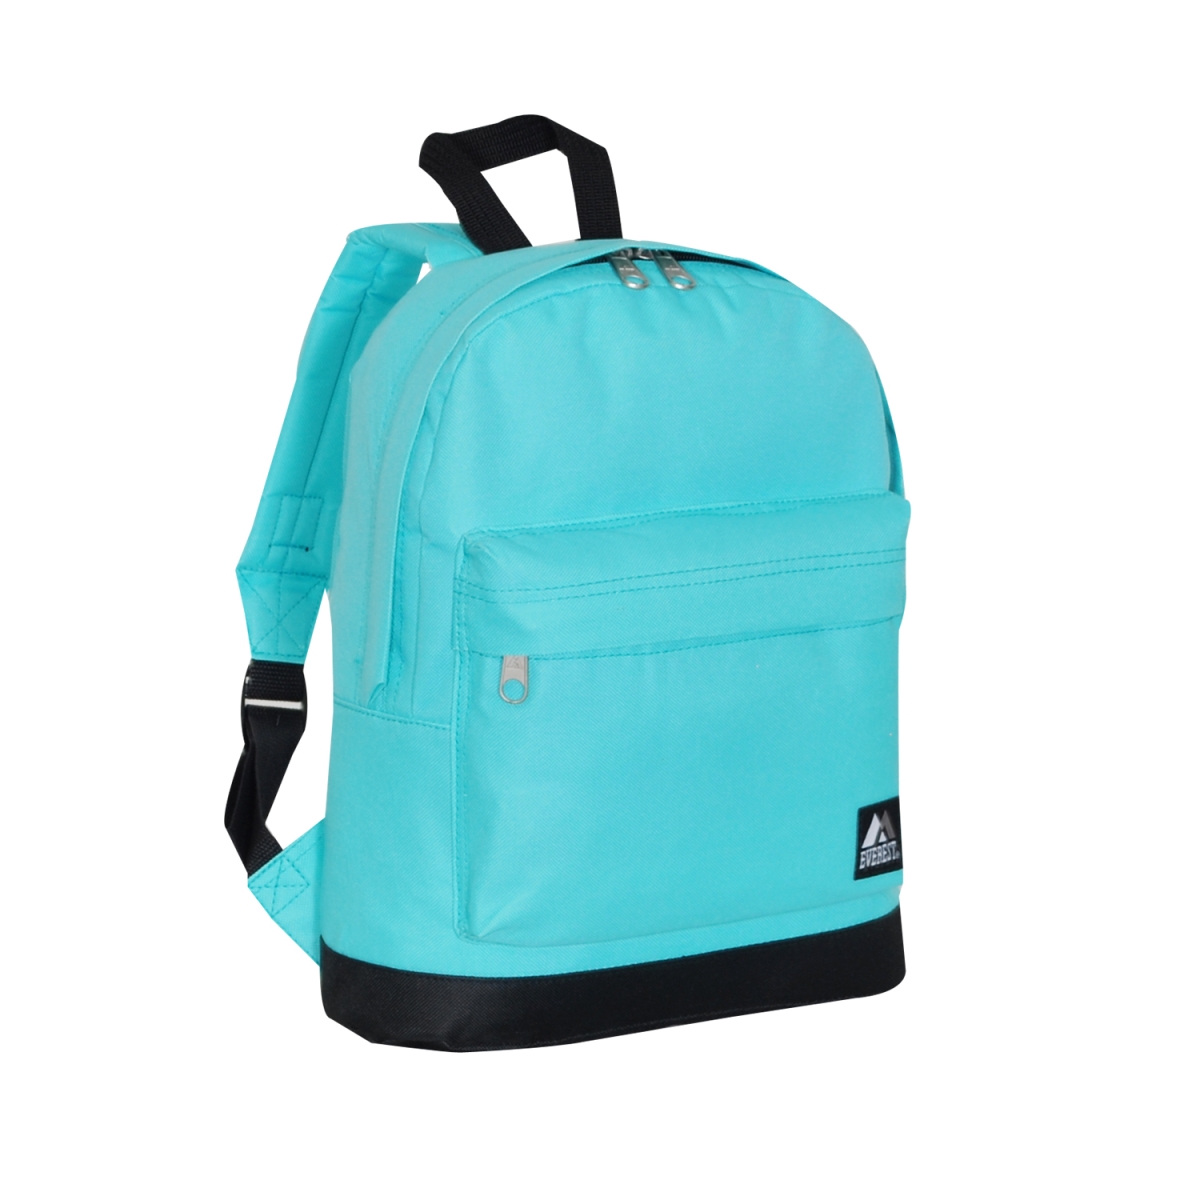 10452-aq-bk Junior Backpack, Aqua & Black